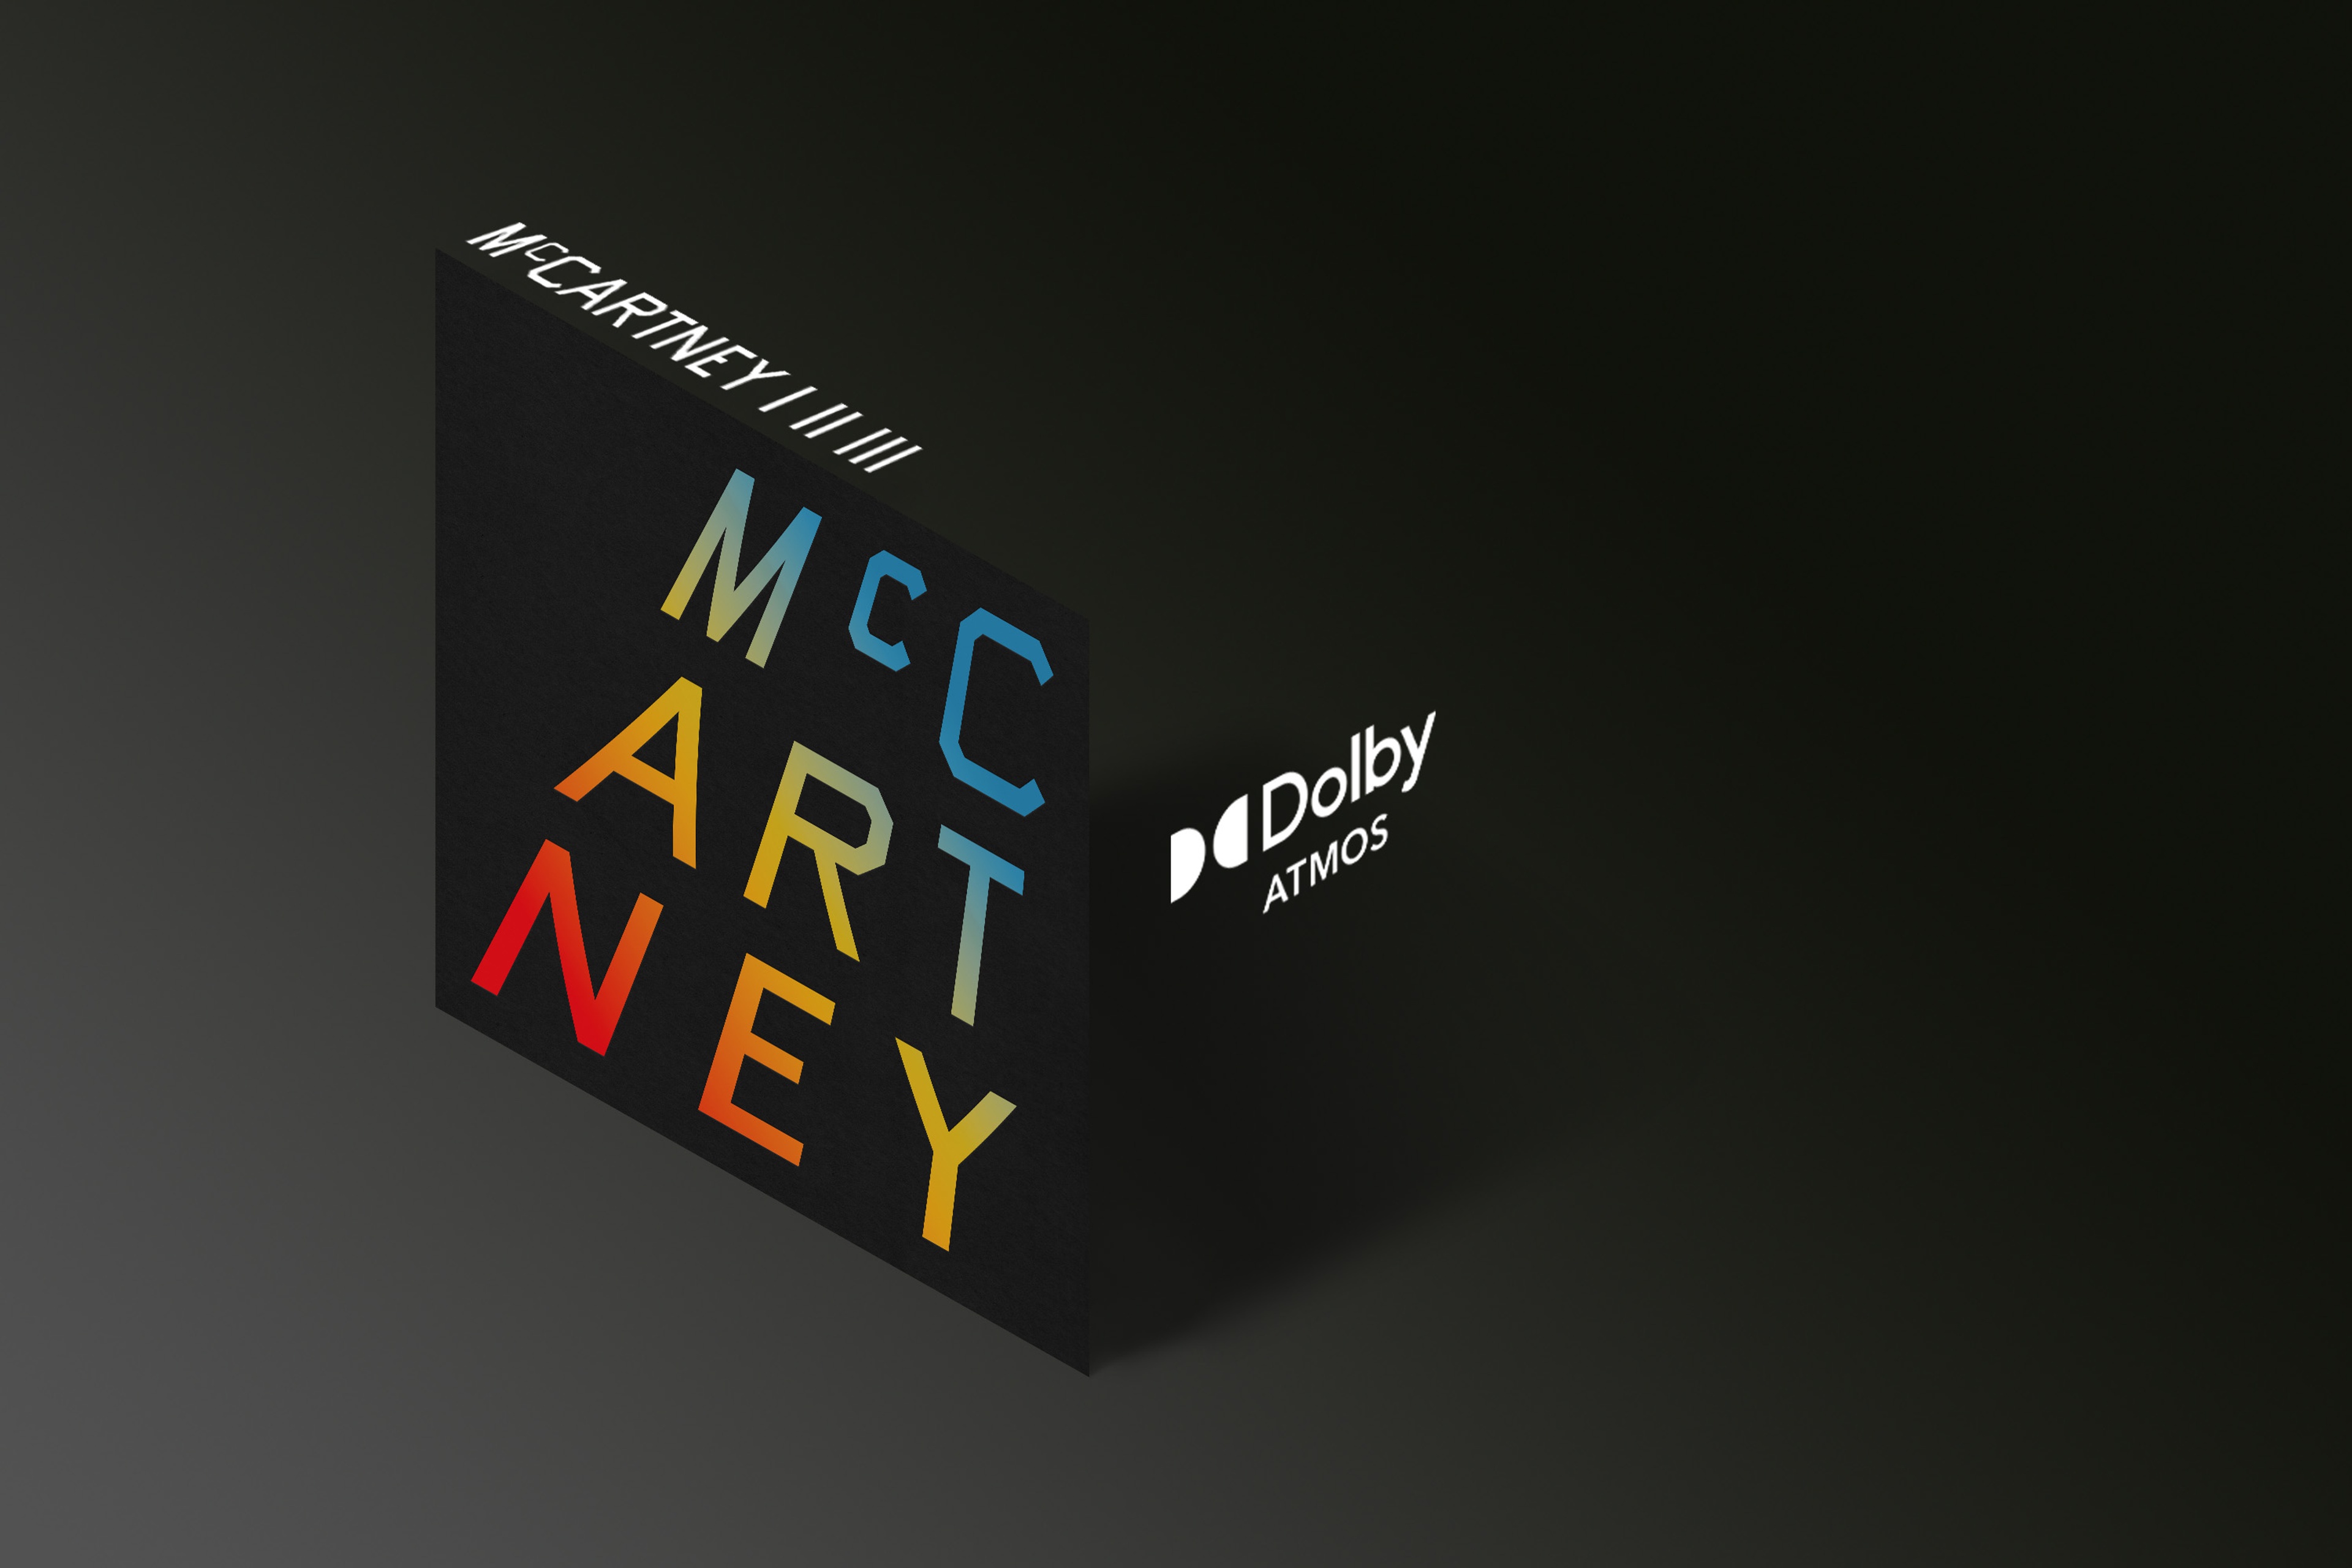 McCartney I II III logo next to the Dolby Atmos logo